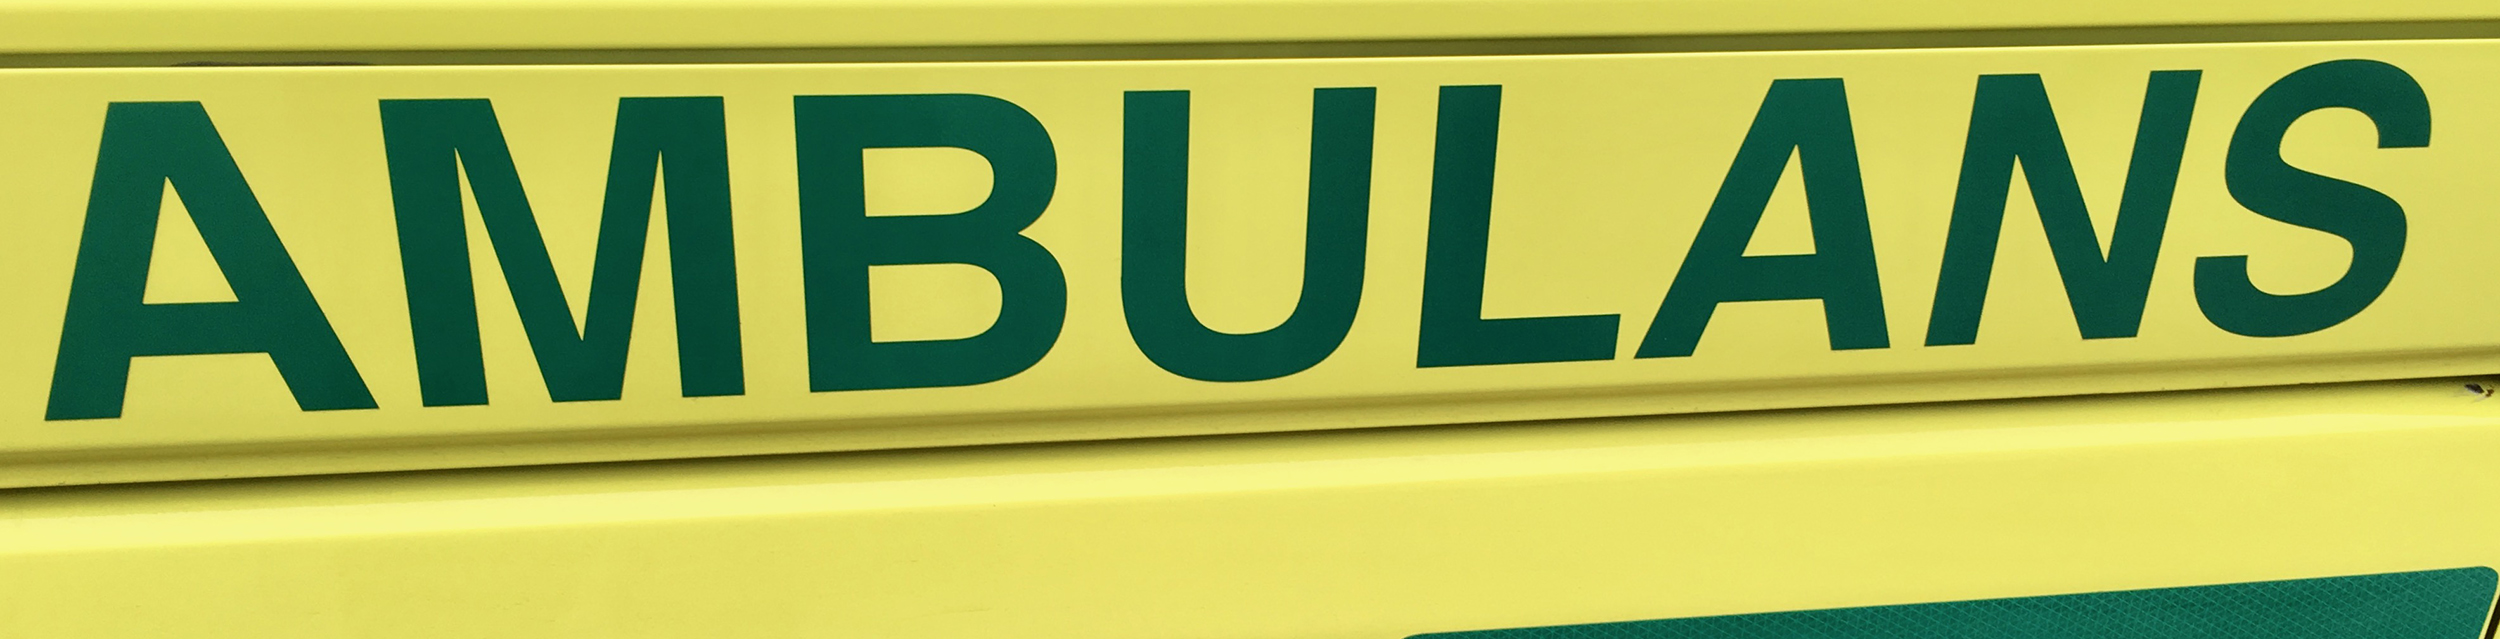 Texten Ambulans på sidan av en ambulans